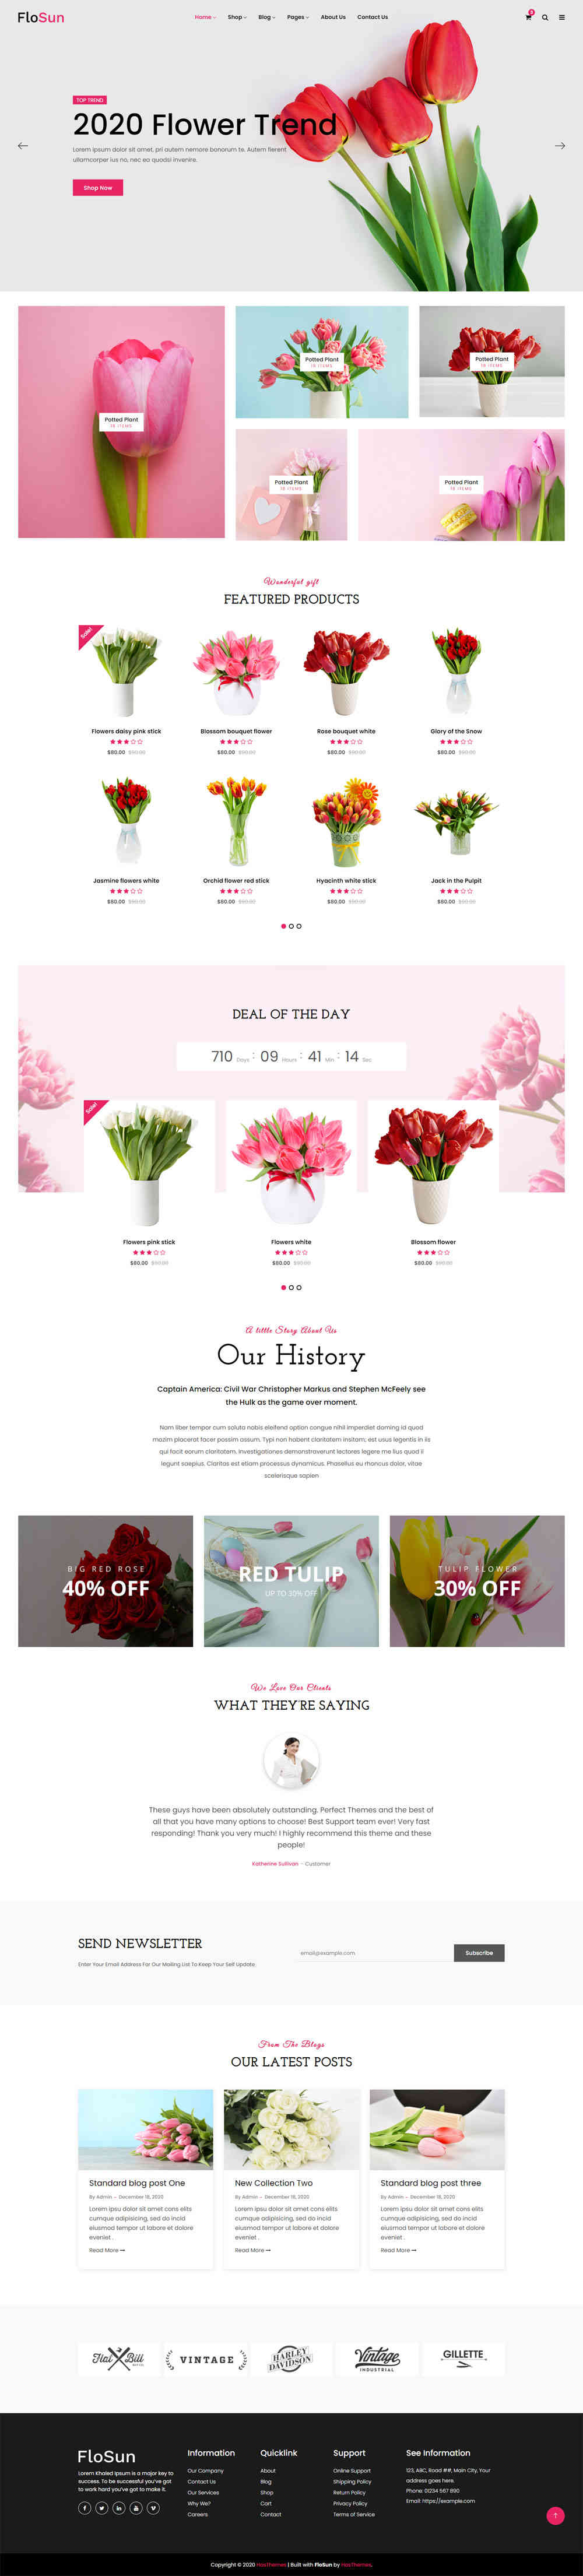 thiet ke website tmi flowershop 10027